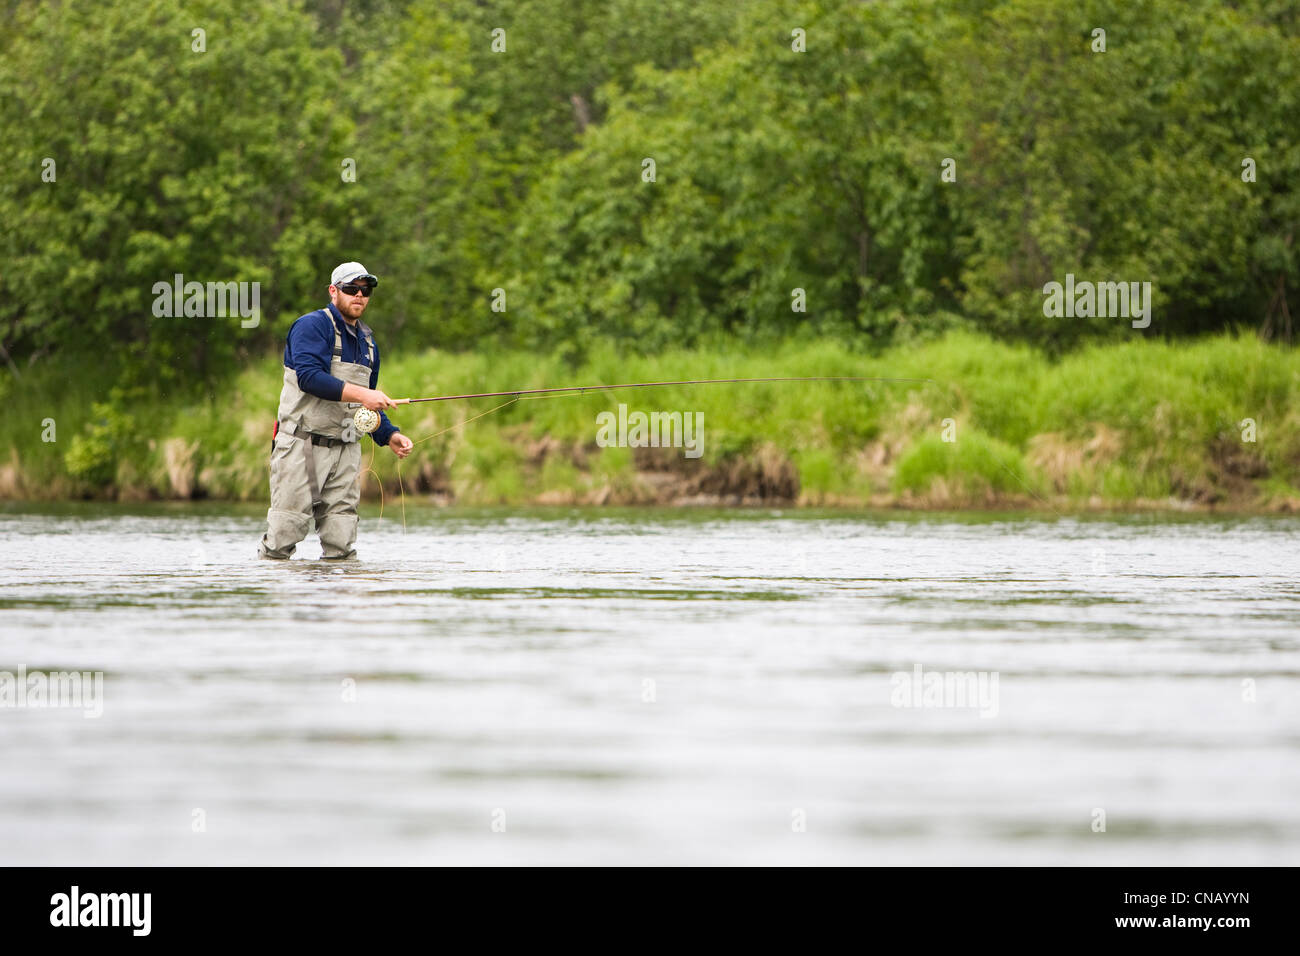 Un sportfisherman la pêche du saumon sur la rivière Mulchatna dans la région de Bristol Bay, sud-ouest de l'Alaska, l'été Banque D'Images